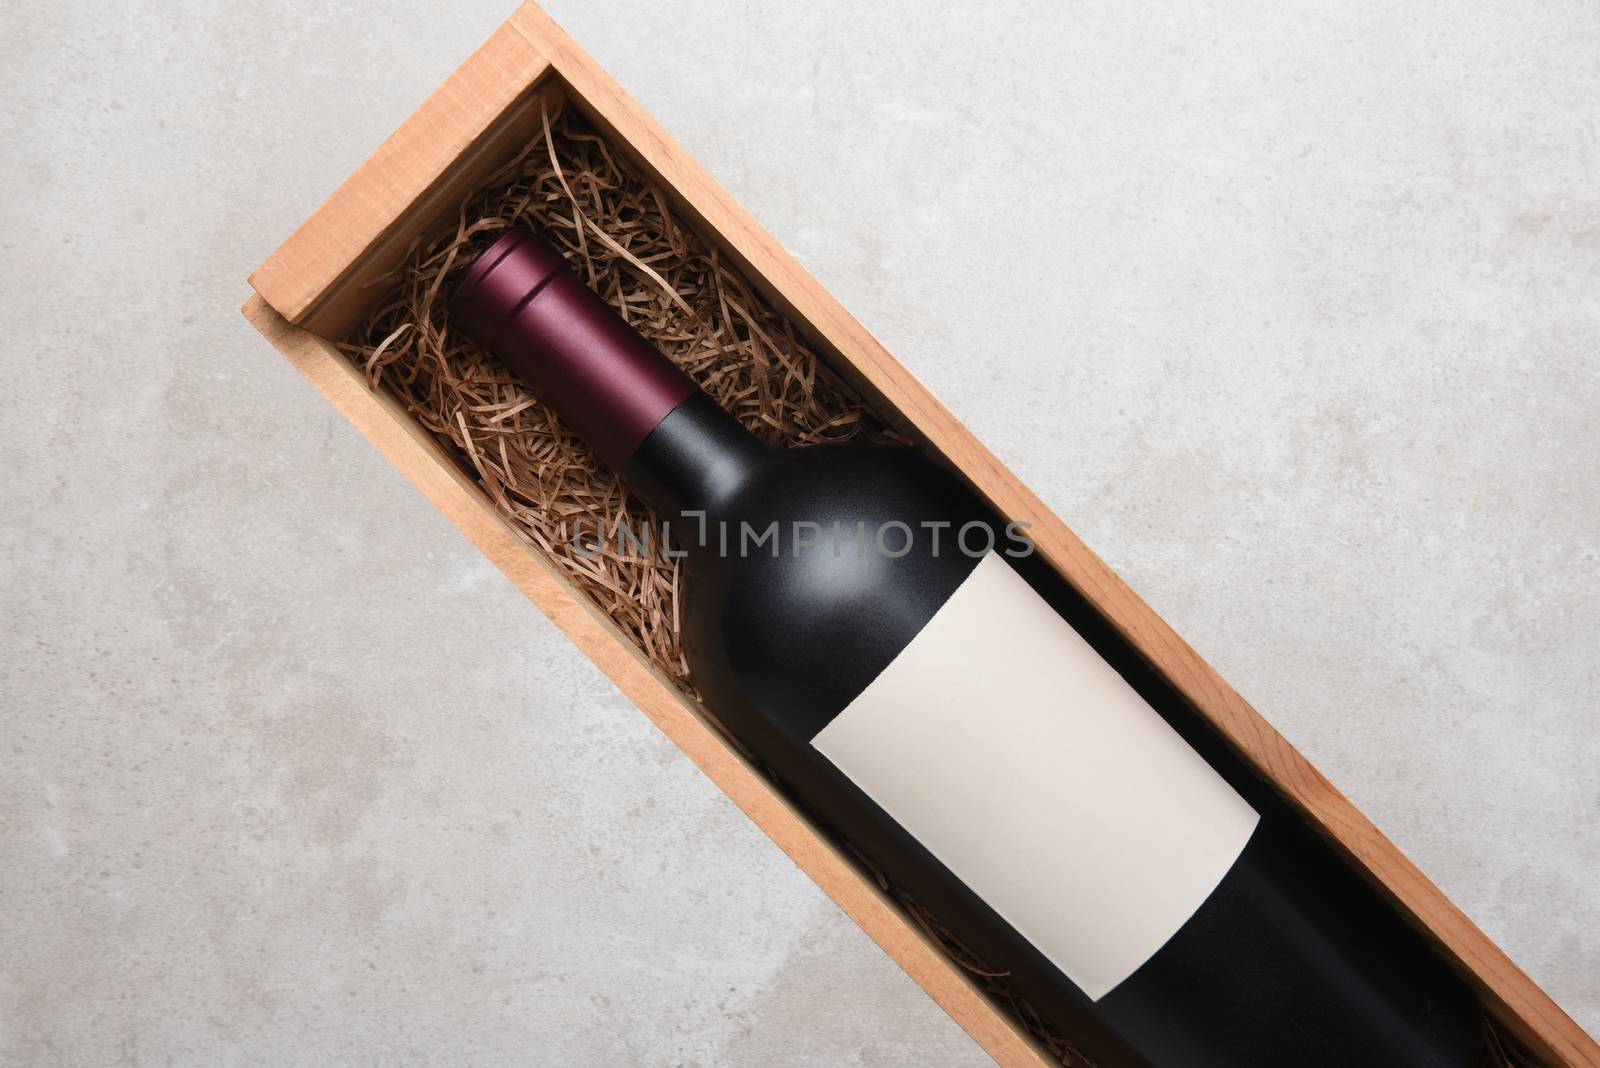 A single bottle of Cabernet wine in a wood case by sCukrov